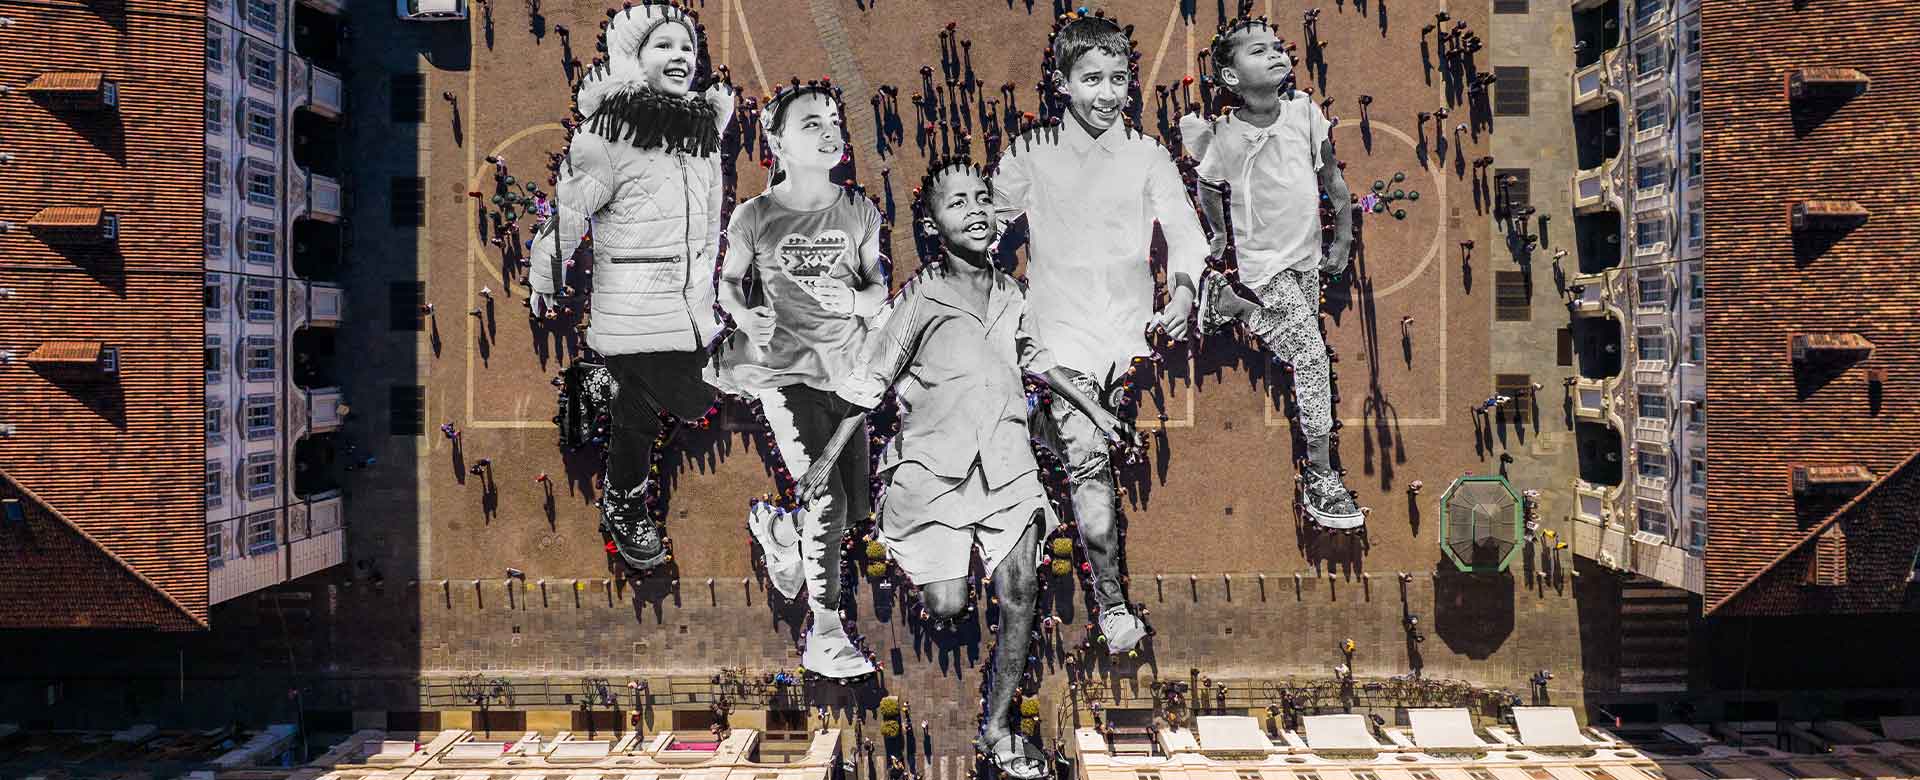 La performance in piazza San Carlo a Torino con le grandi opere di JR raffiguranti bambini e bambine profughi Copyright JR